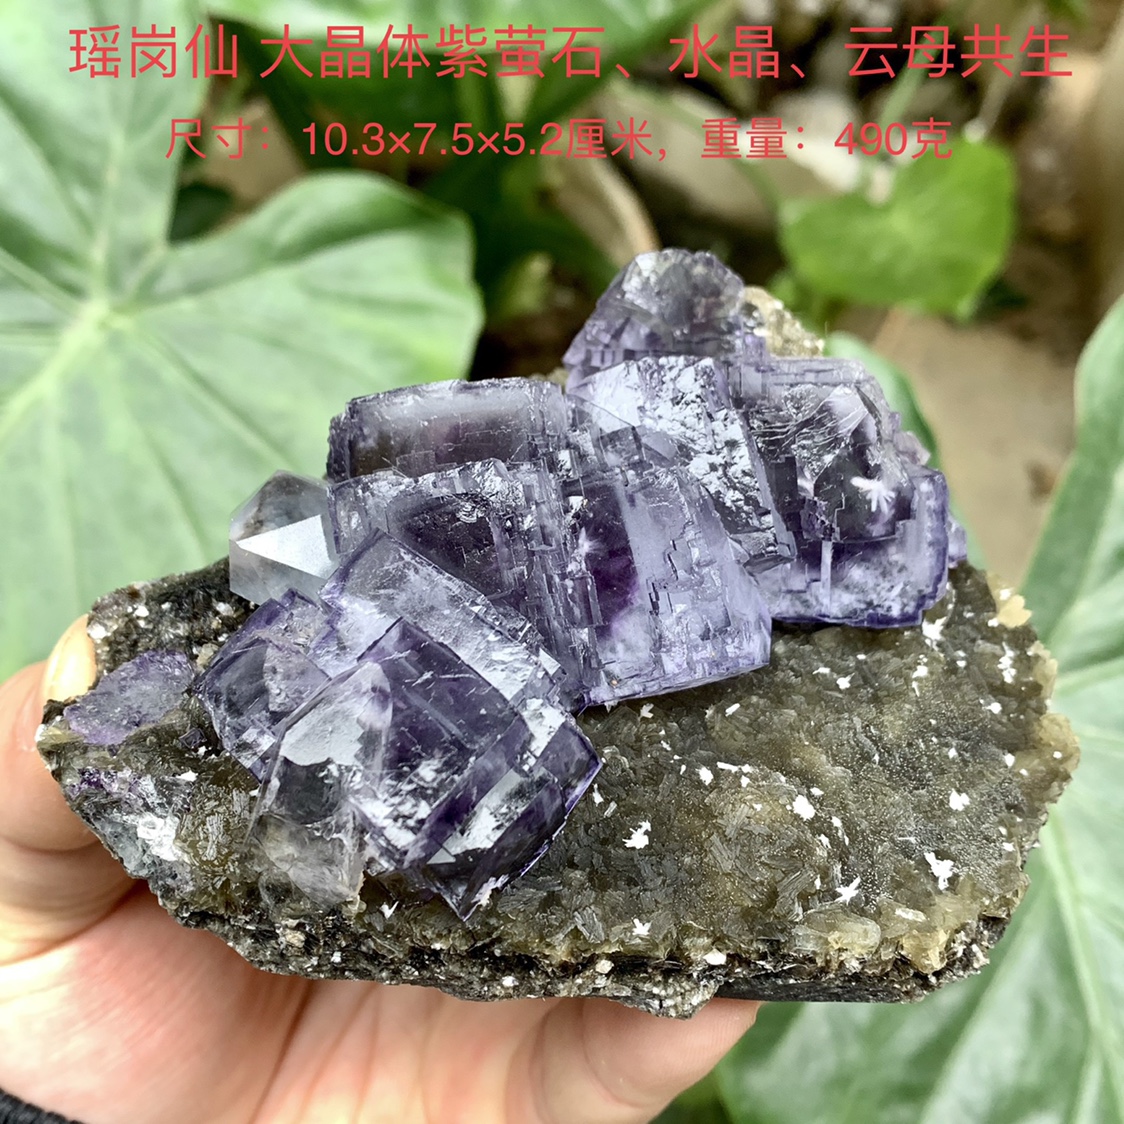 瑶岗仙紫萤石水晶云母天然矿物晶体标本矿石原石收藏石头摆件e28